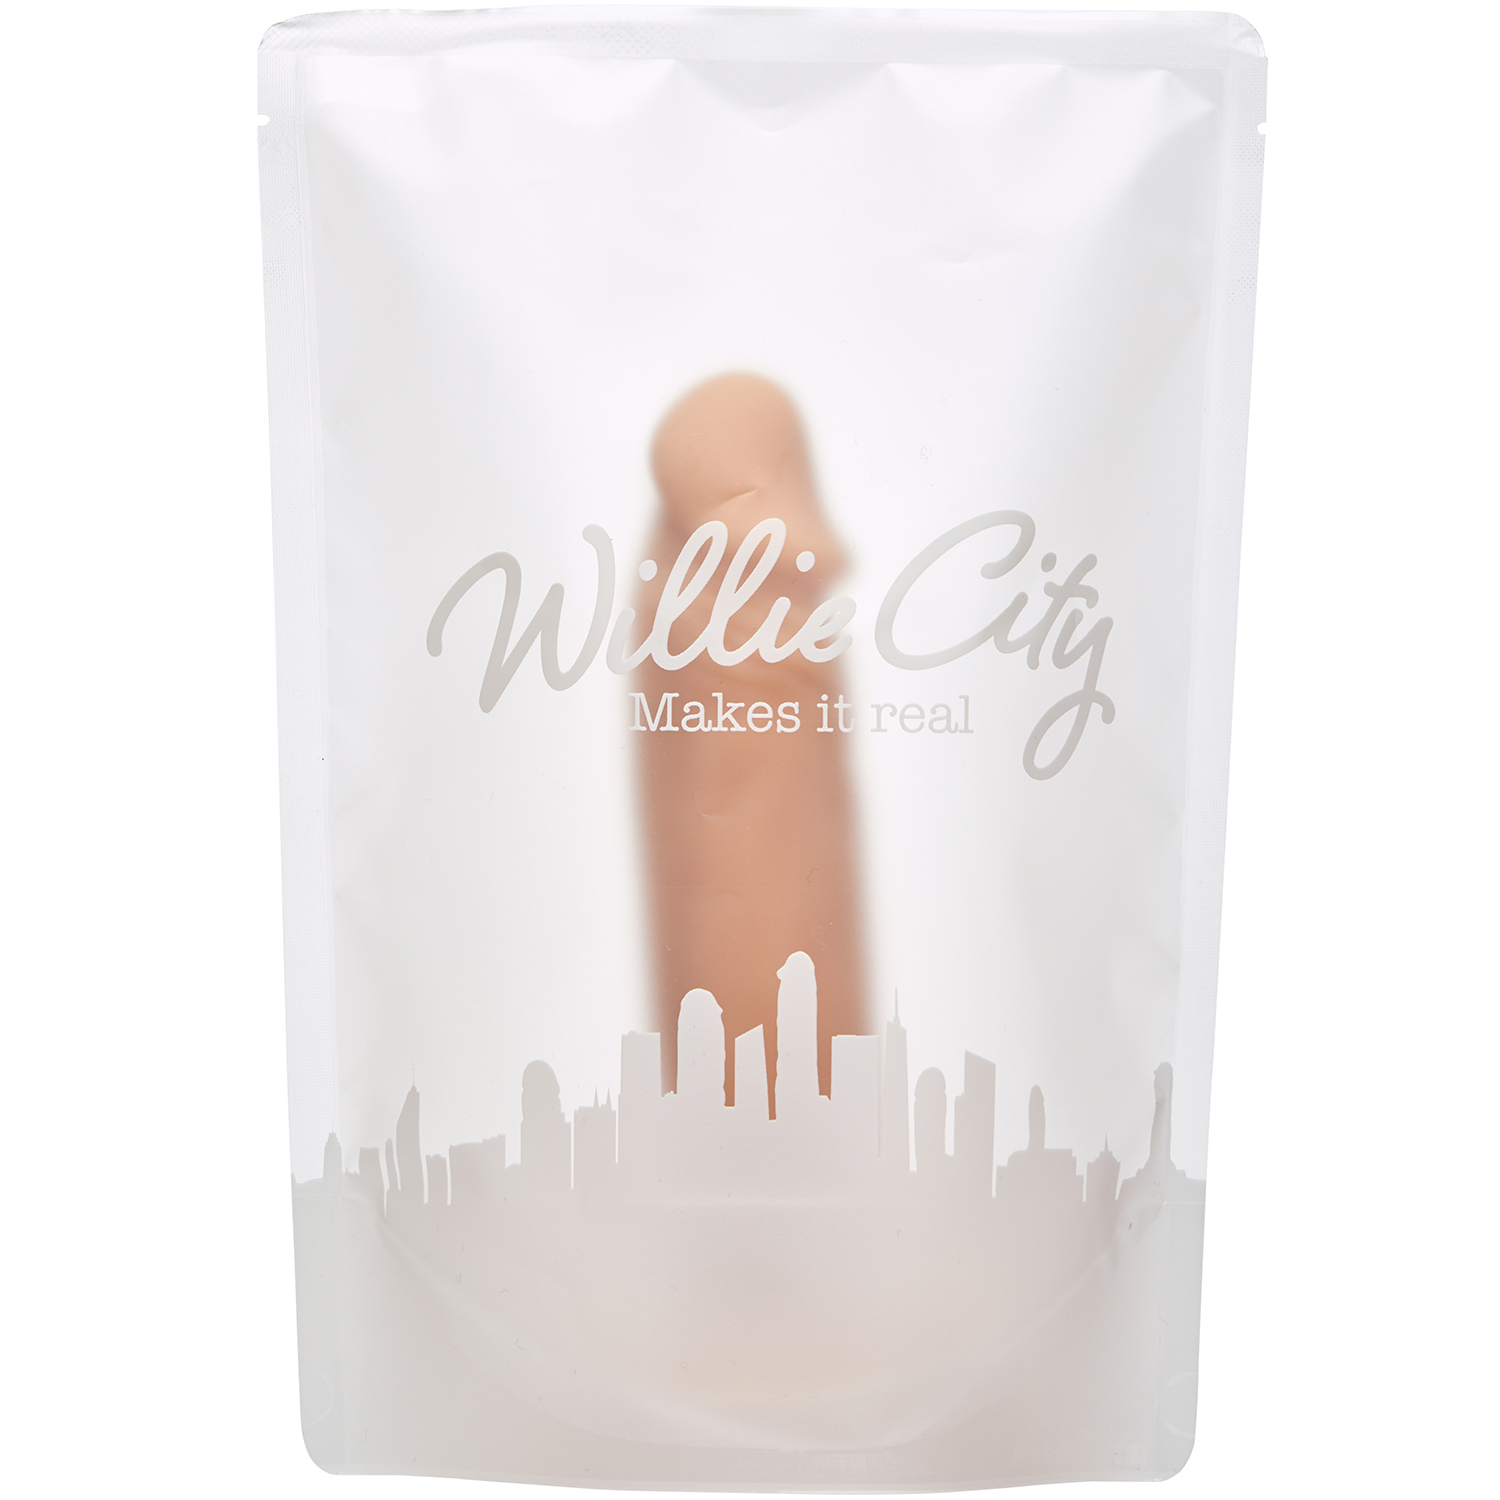 Willie City Realistisk Dildo med Sugekop 19 cm thumbnail